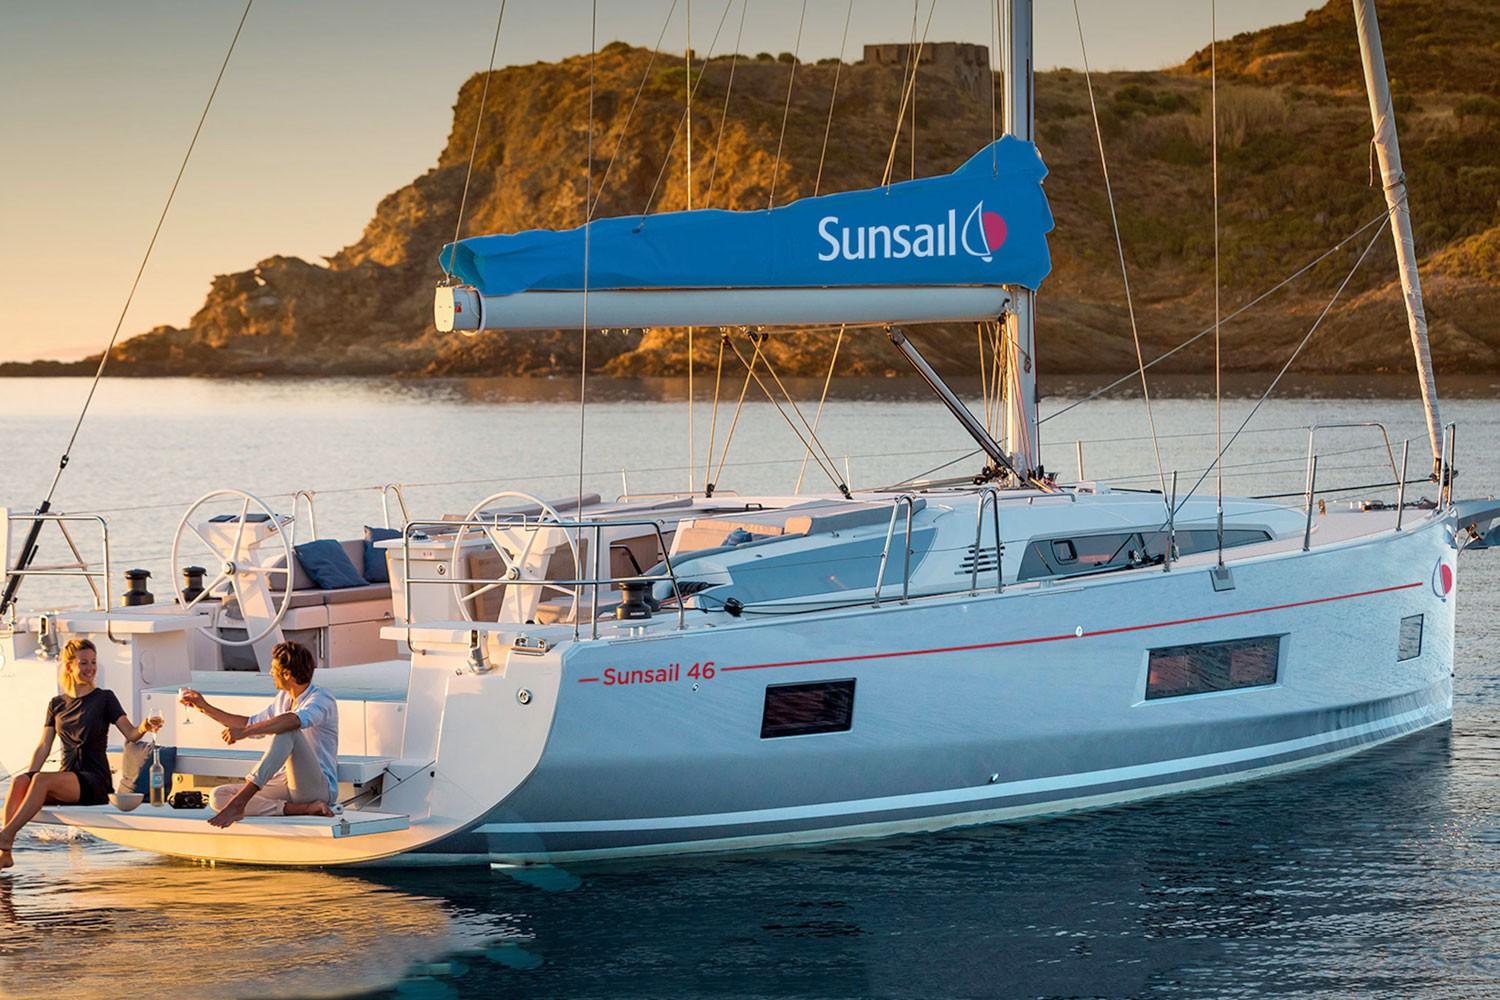 Sunsail schließt seine Basis auf Mallorca